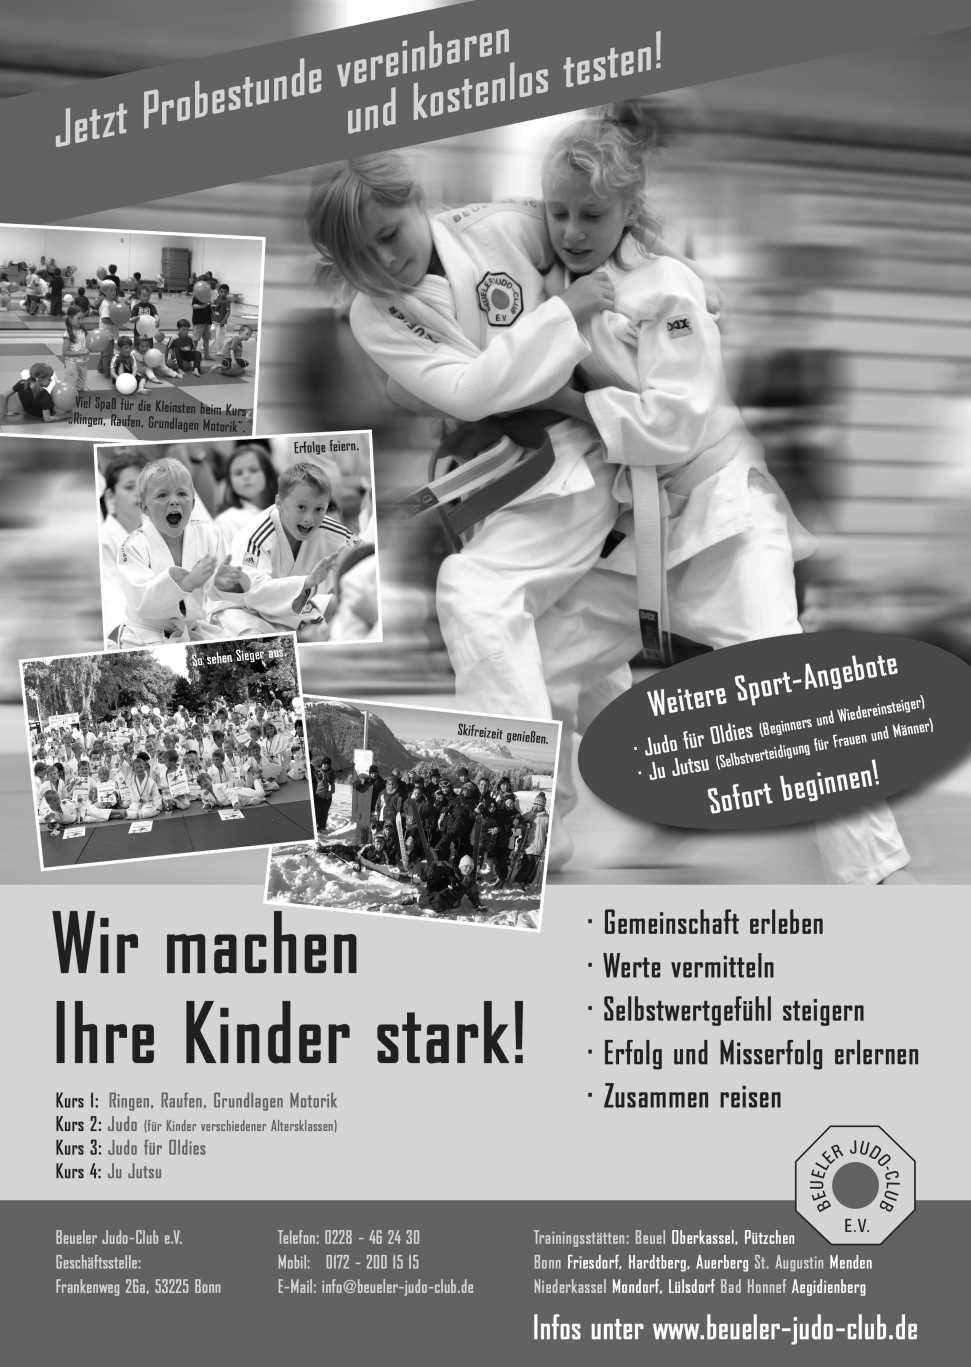 In all den Jahren seines Bestehens hat der BJC unzähligen Kindern aus Bonn und der Umgebung neben der Freude an der Bewegung und dem Sport auch andere wichtige Werte vermittelt.